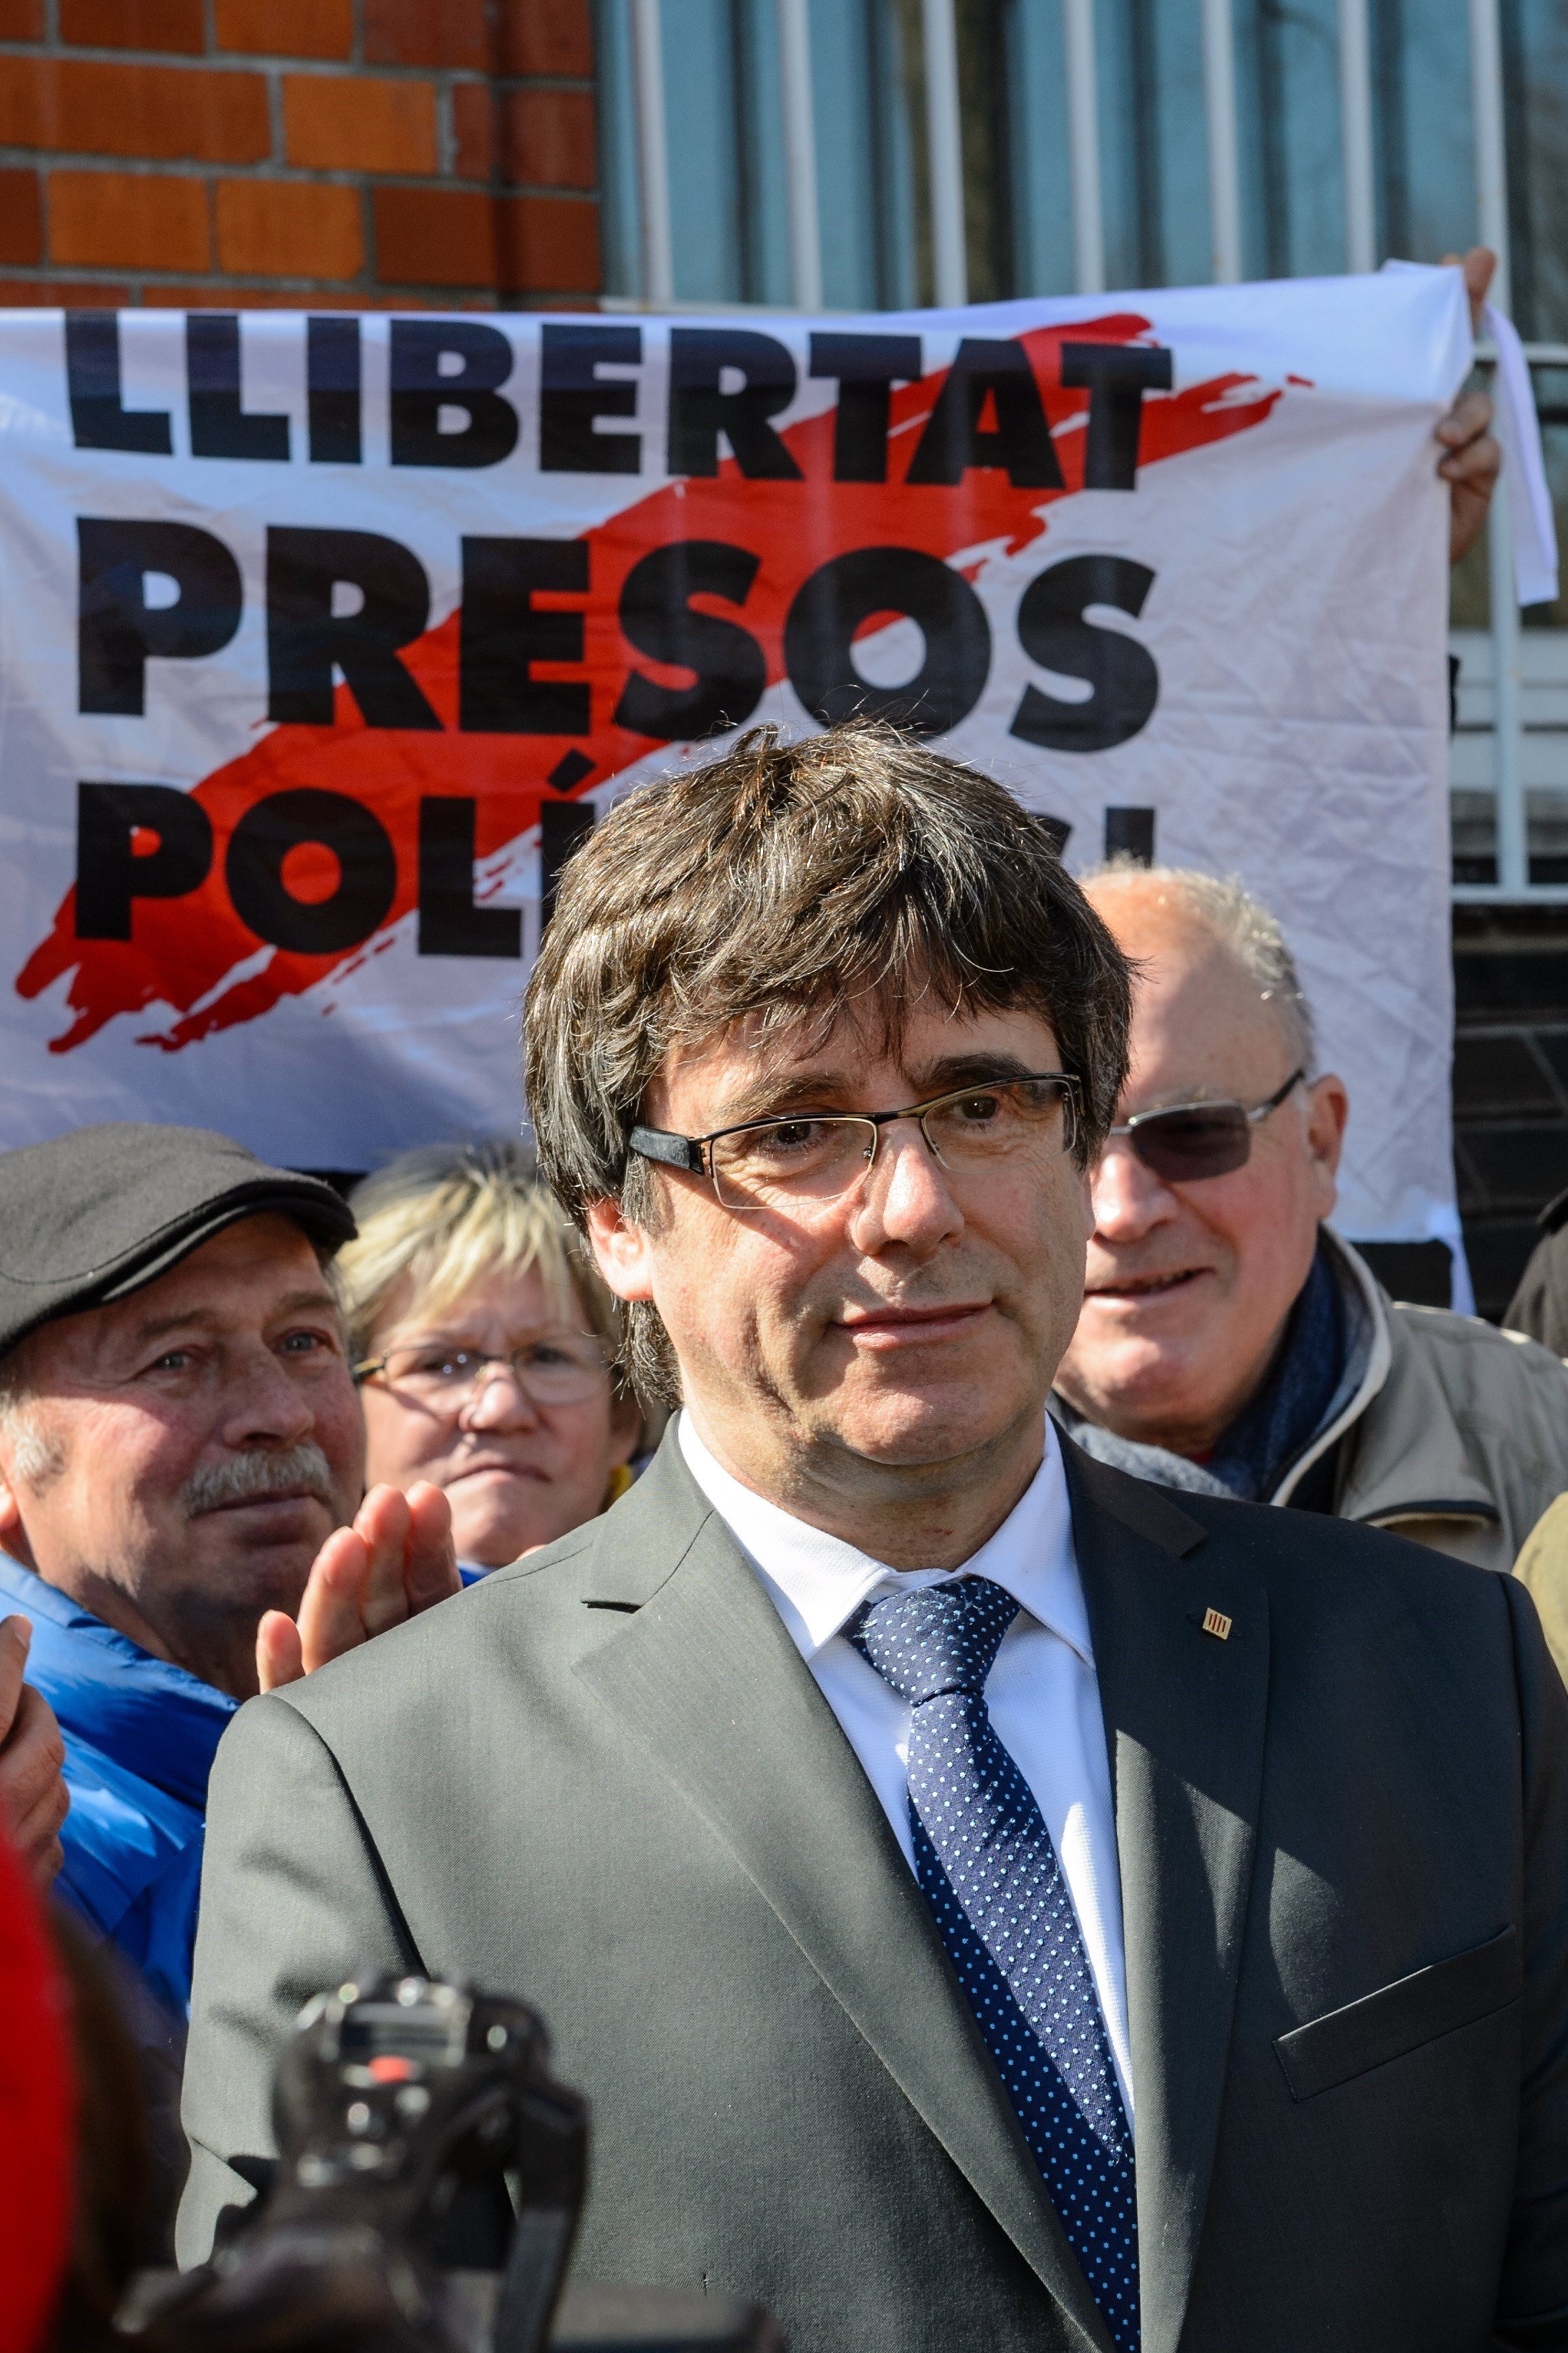 El missatge d'ànims de Puigdemont en sortir de la presó: "Seguirem endavant"